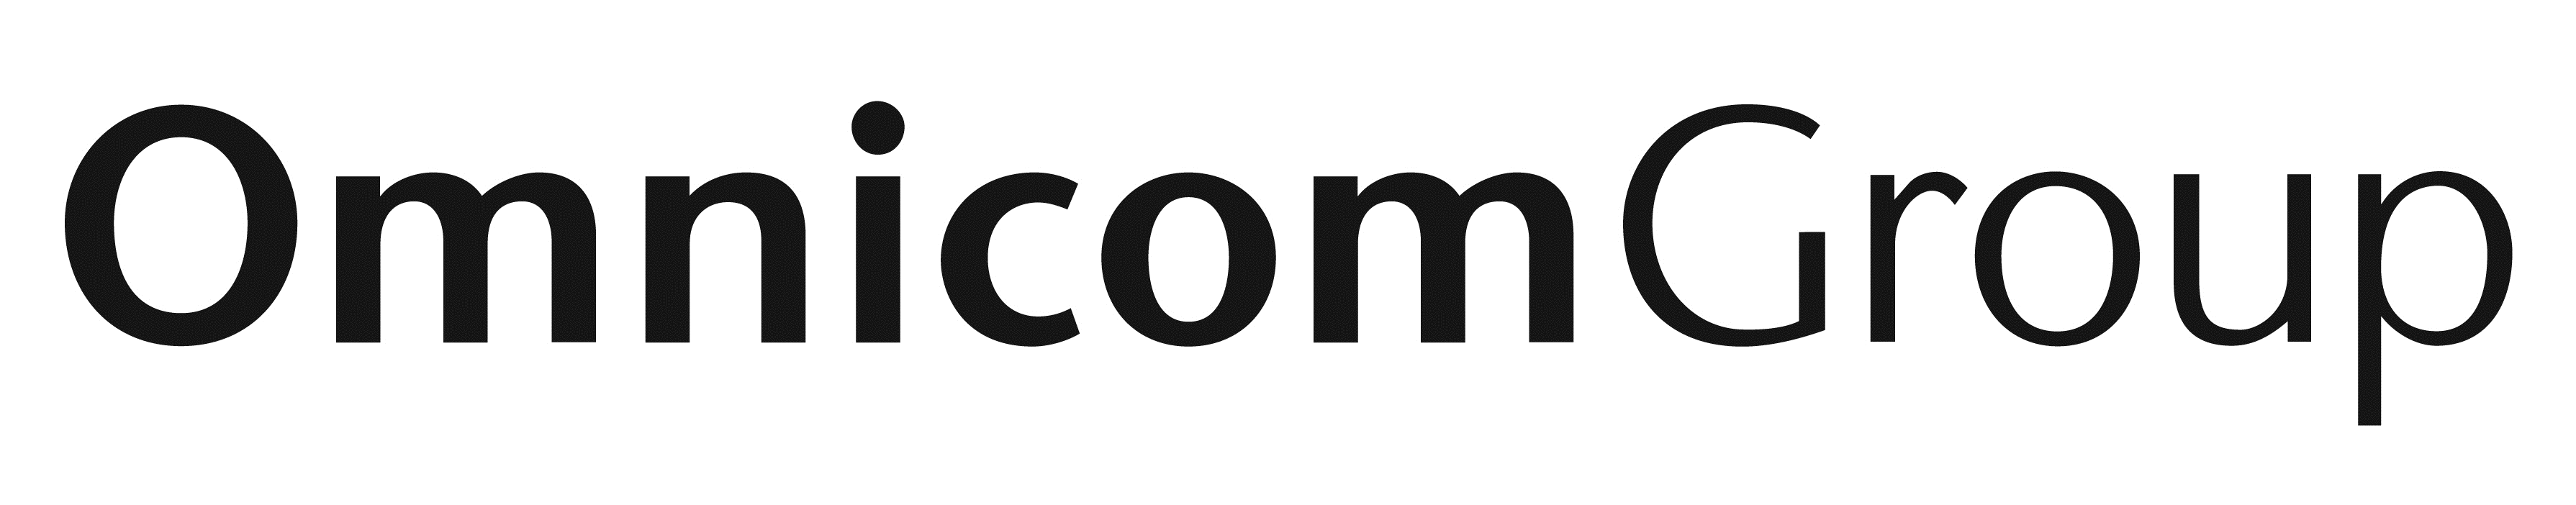 Omnicom Group Logo PNG Image